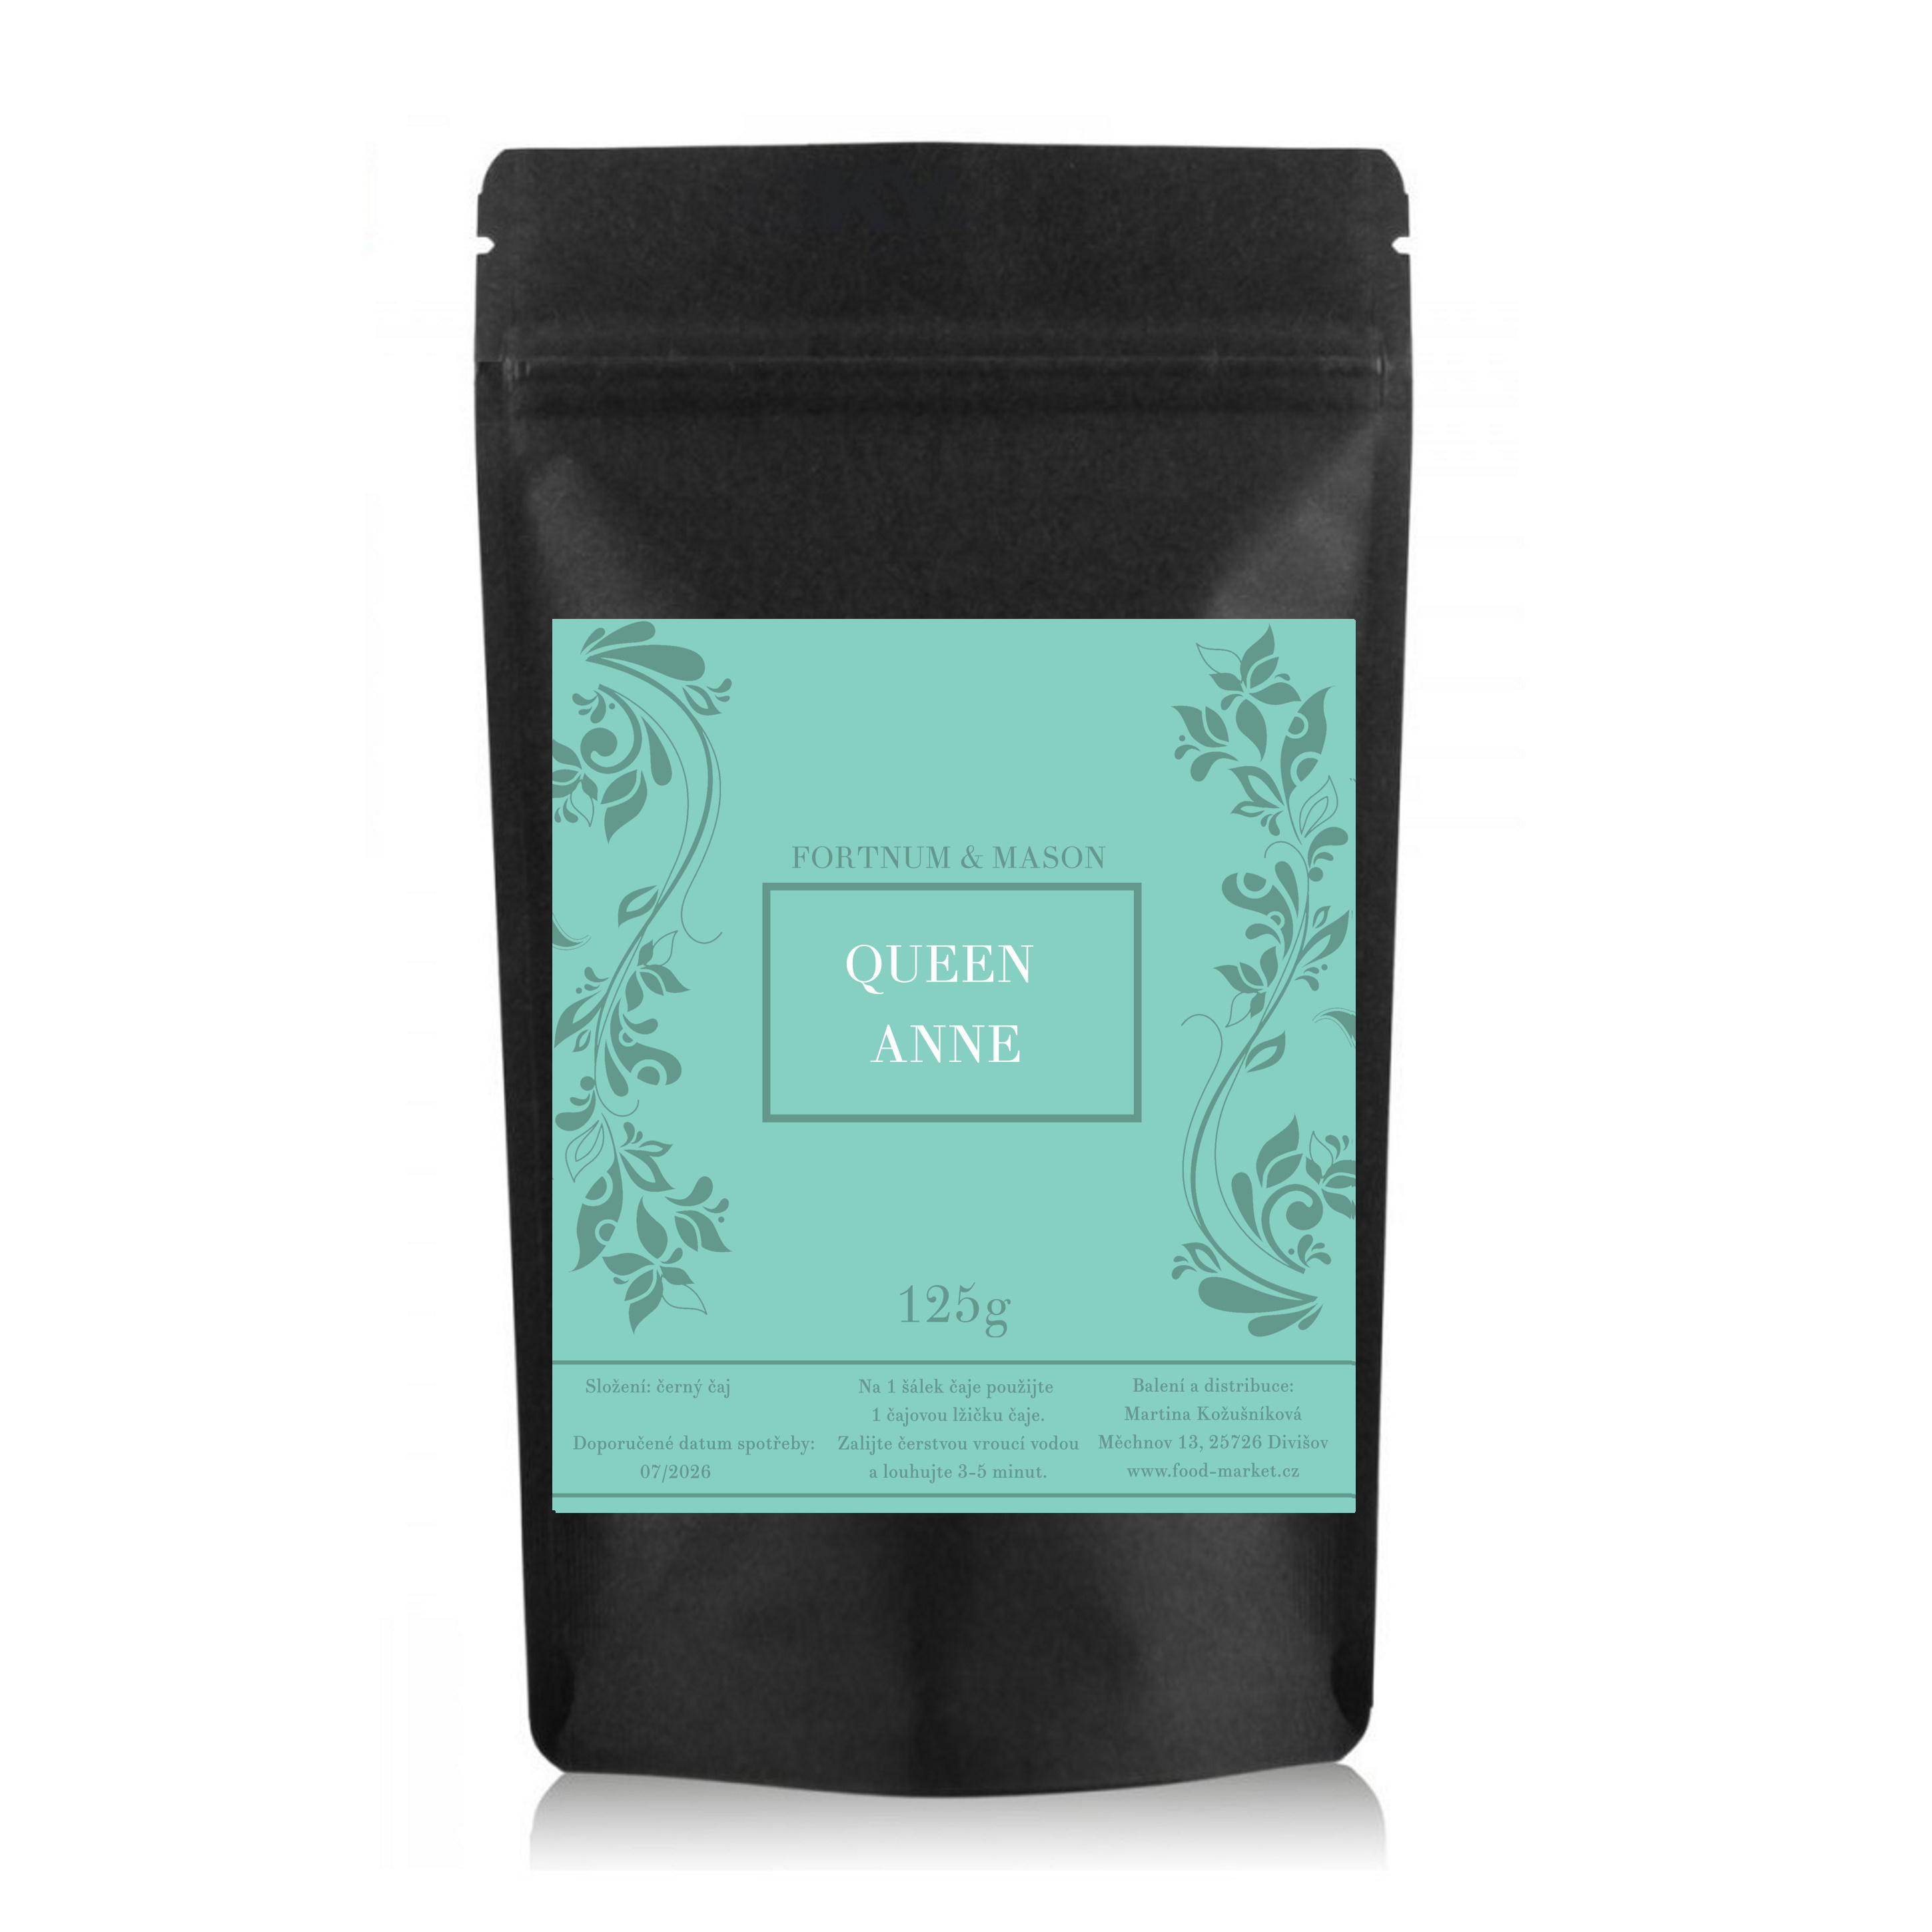 černý čaj QUEEN ANNE sypaný 125g (sáček) od Fortnum & Mason